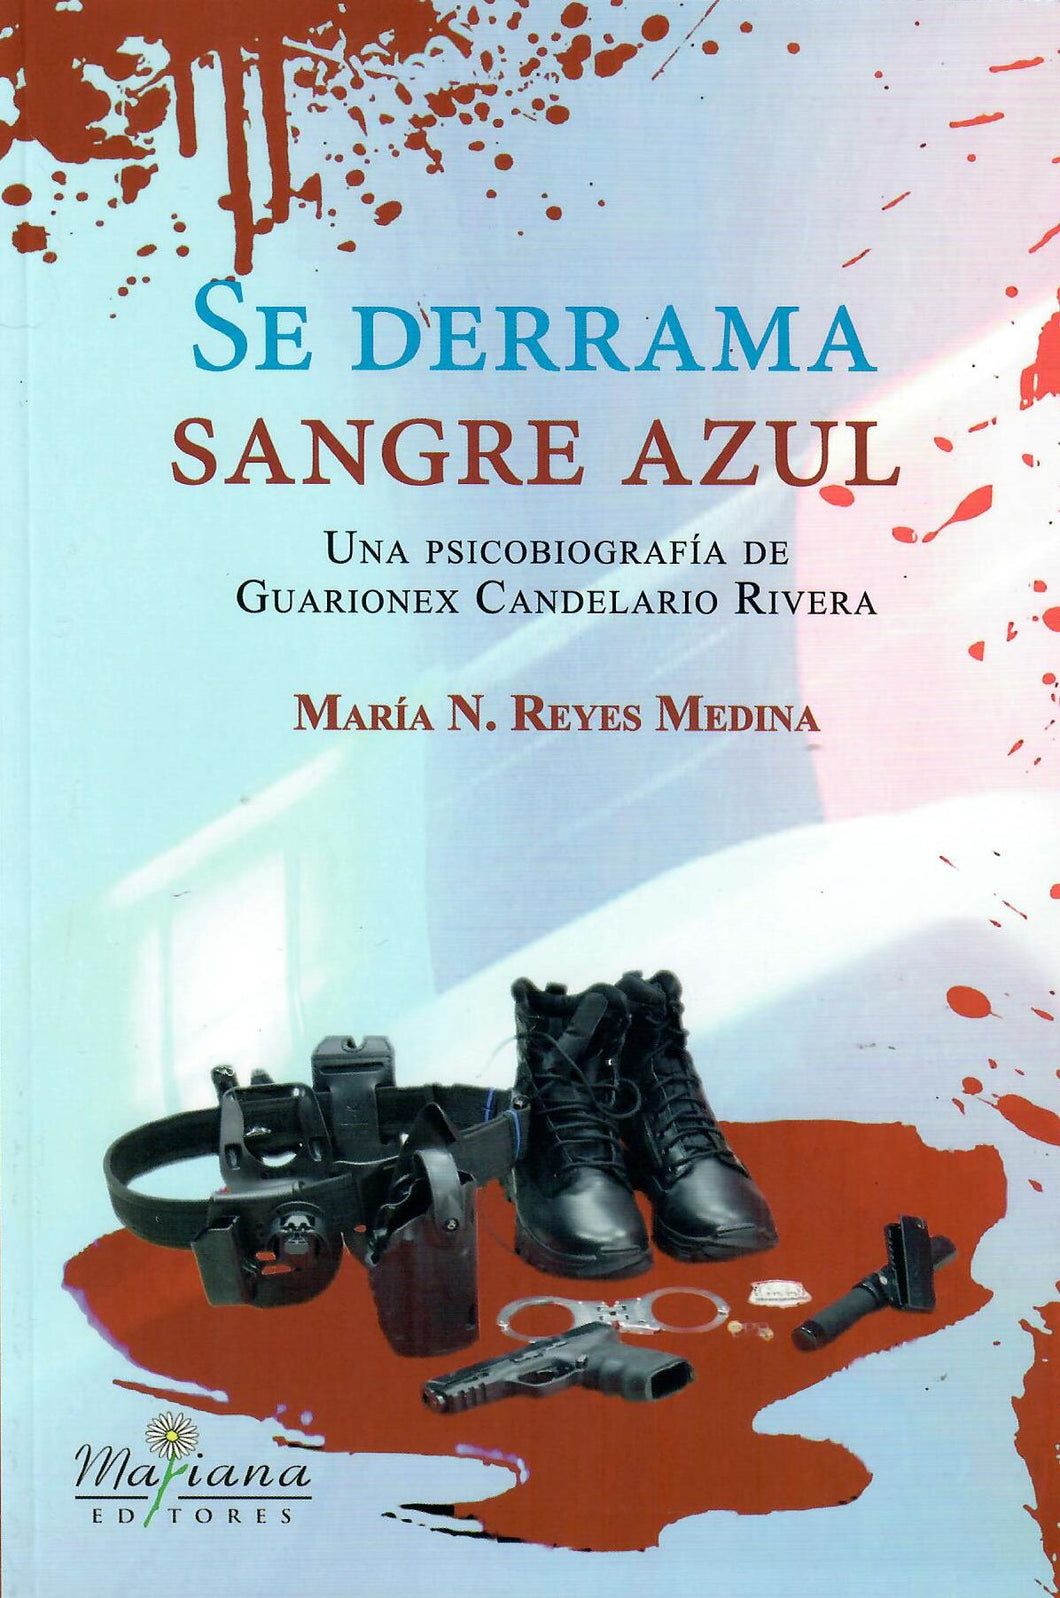 SE DERRAMA SANGRE AZUL: UNA BIOGRAFÍA DE GUARIONEX CANDELARIO RIVERA -María N. Reyes Medina